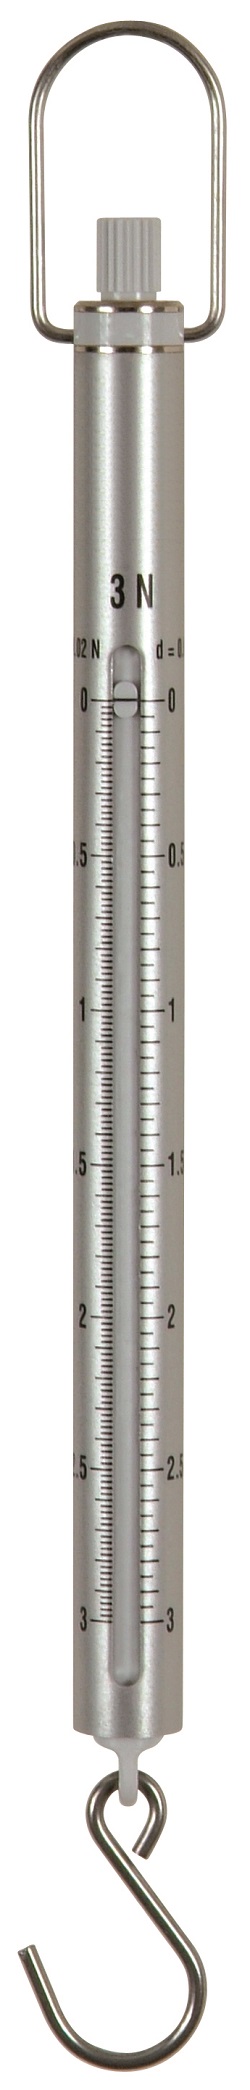 Präzisions-Kraftmesser 0,1 N/10 N